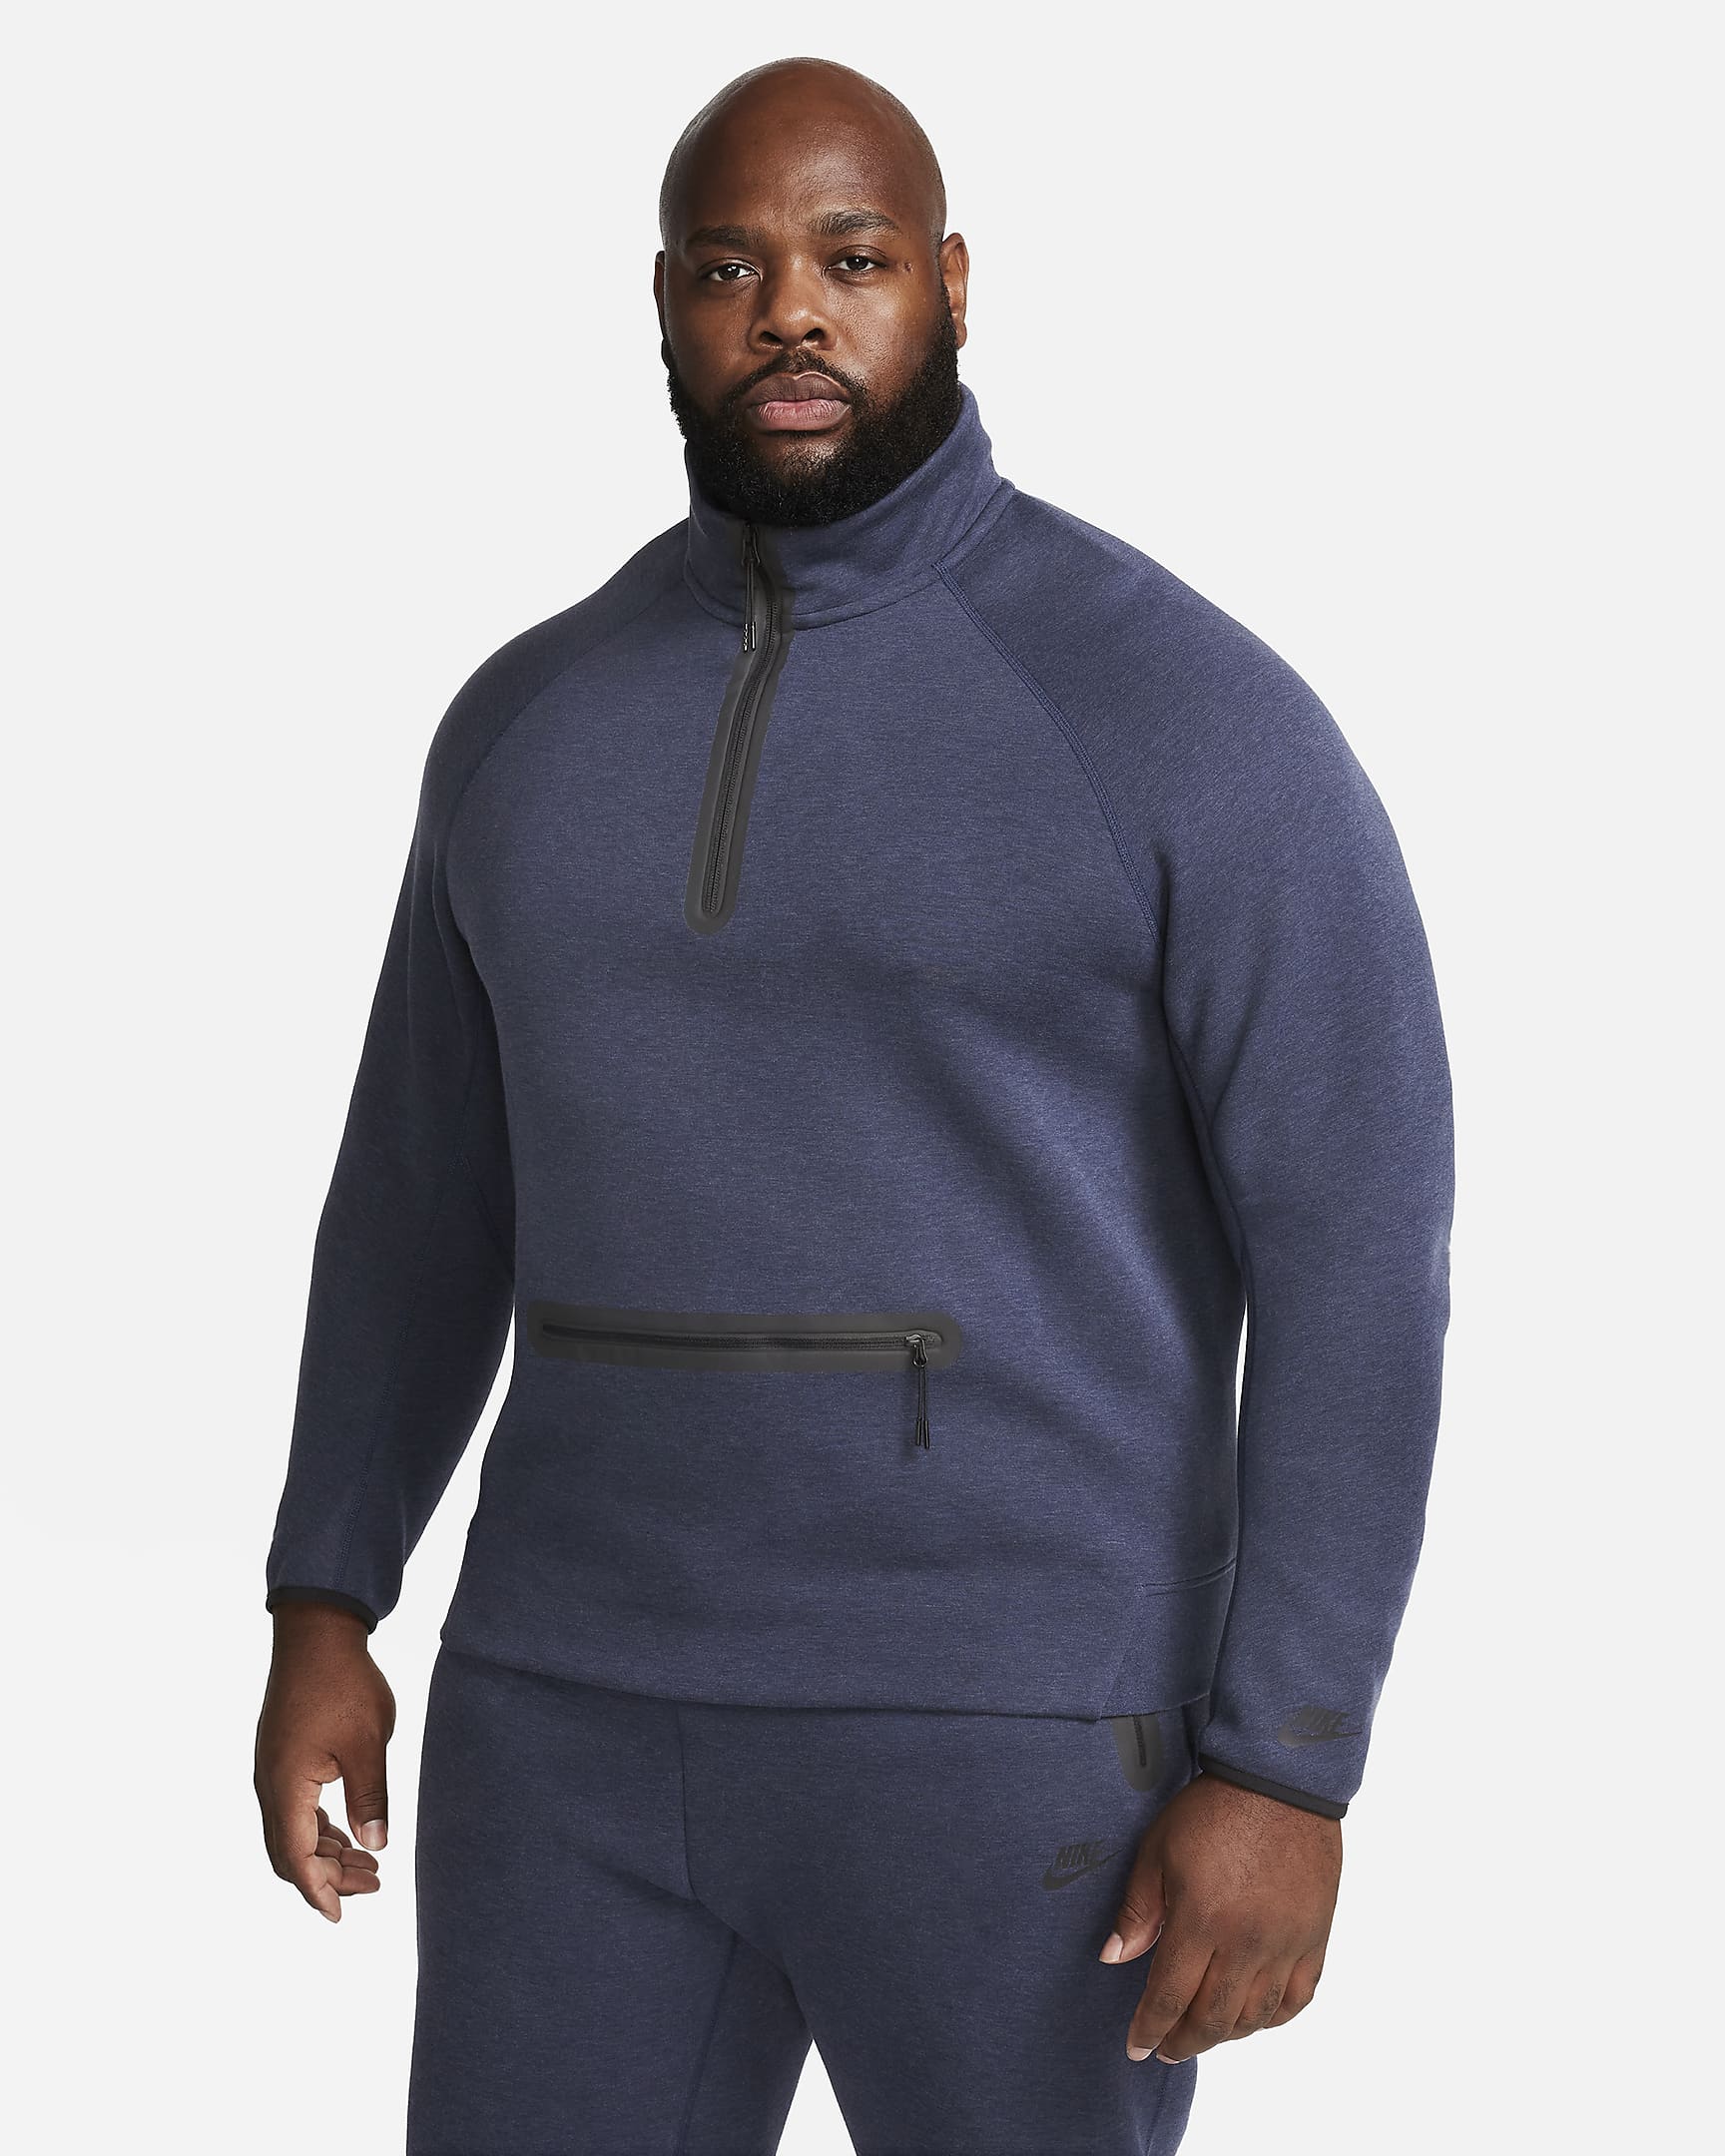 Nike Sportswear Tech Fleece Men's 1/2-Zip Sweatshirt. Nike.com